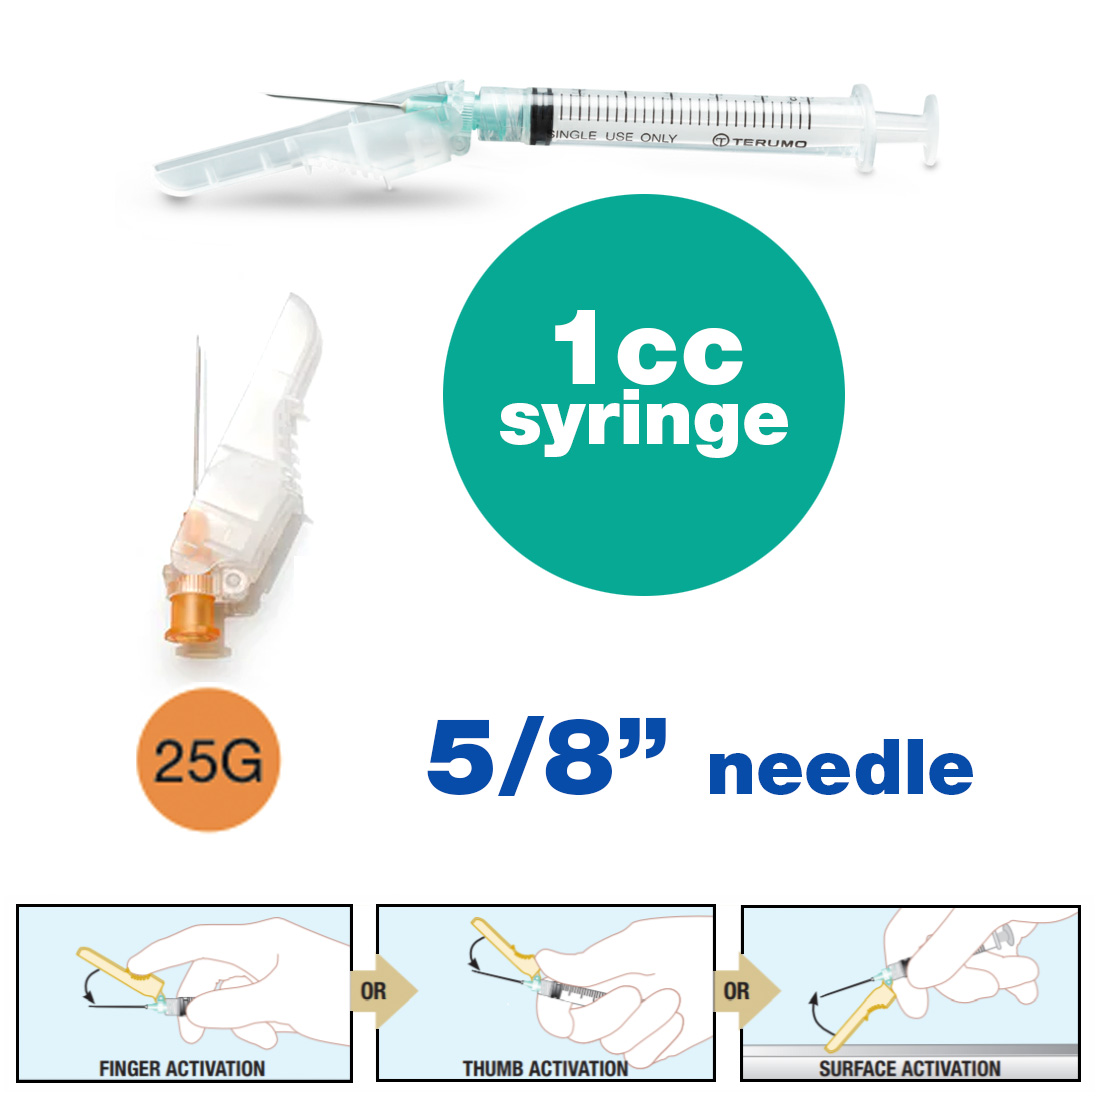 SurGuard® 3 Safety Hypodermic Needle, 1CC Syringe with 25G x 5/8" Needle - 100/Box